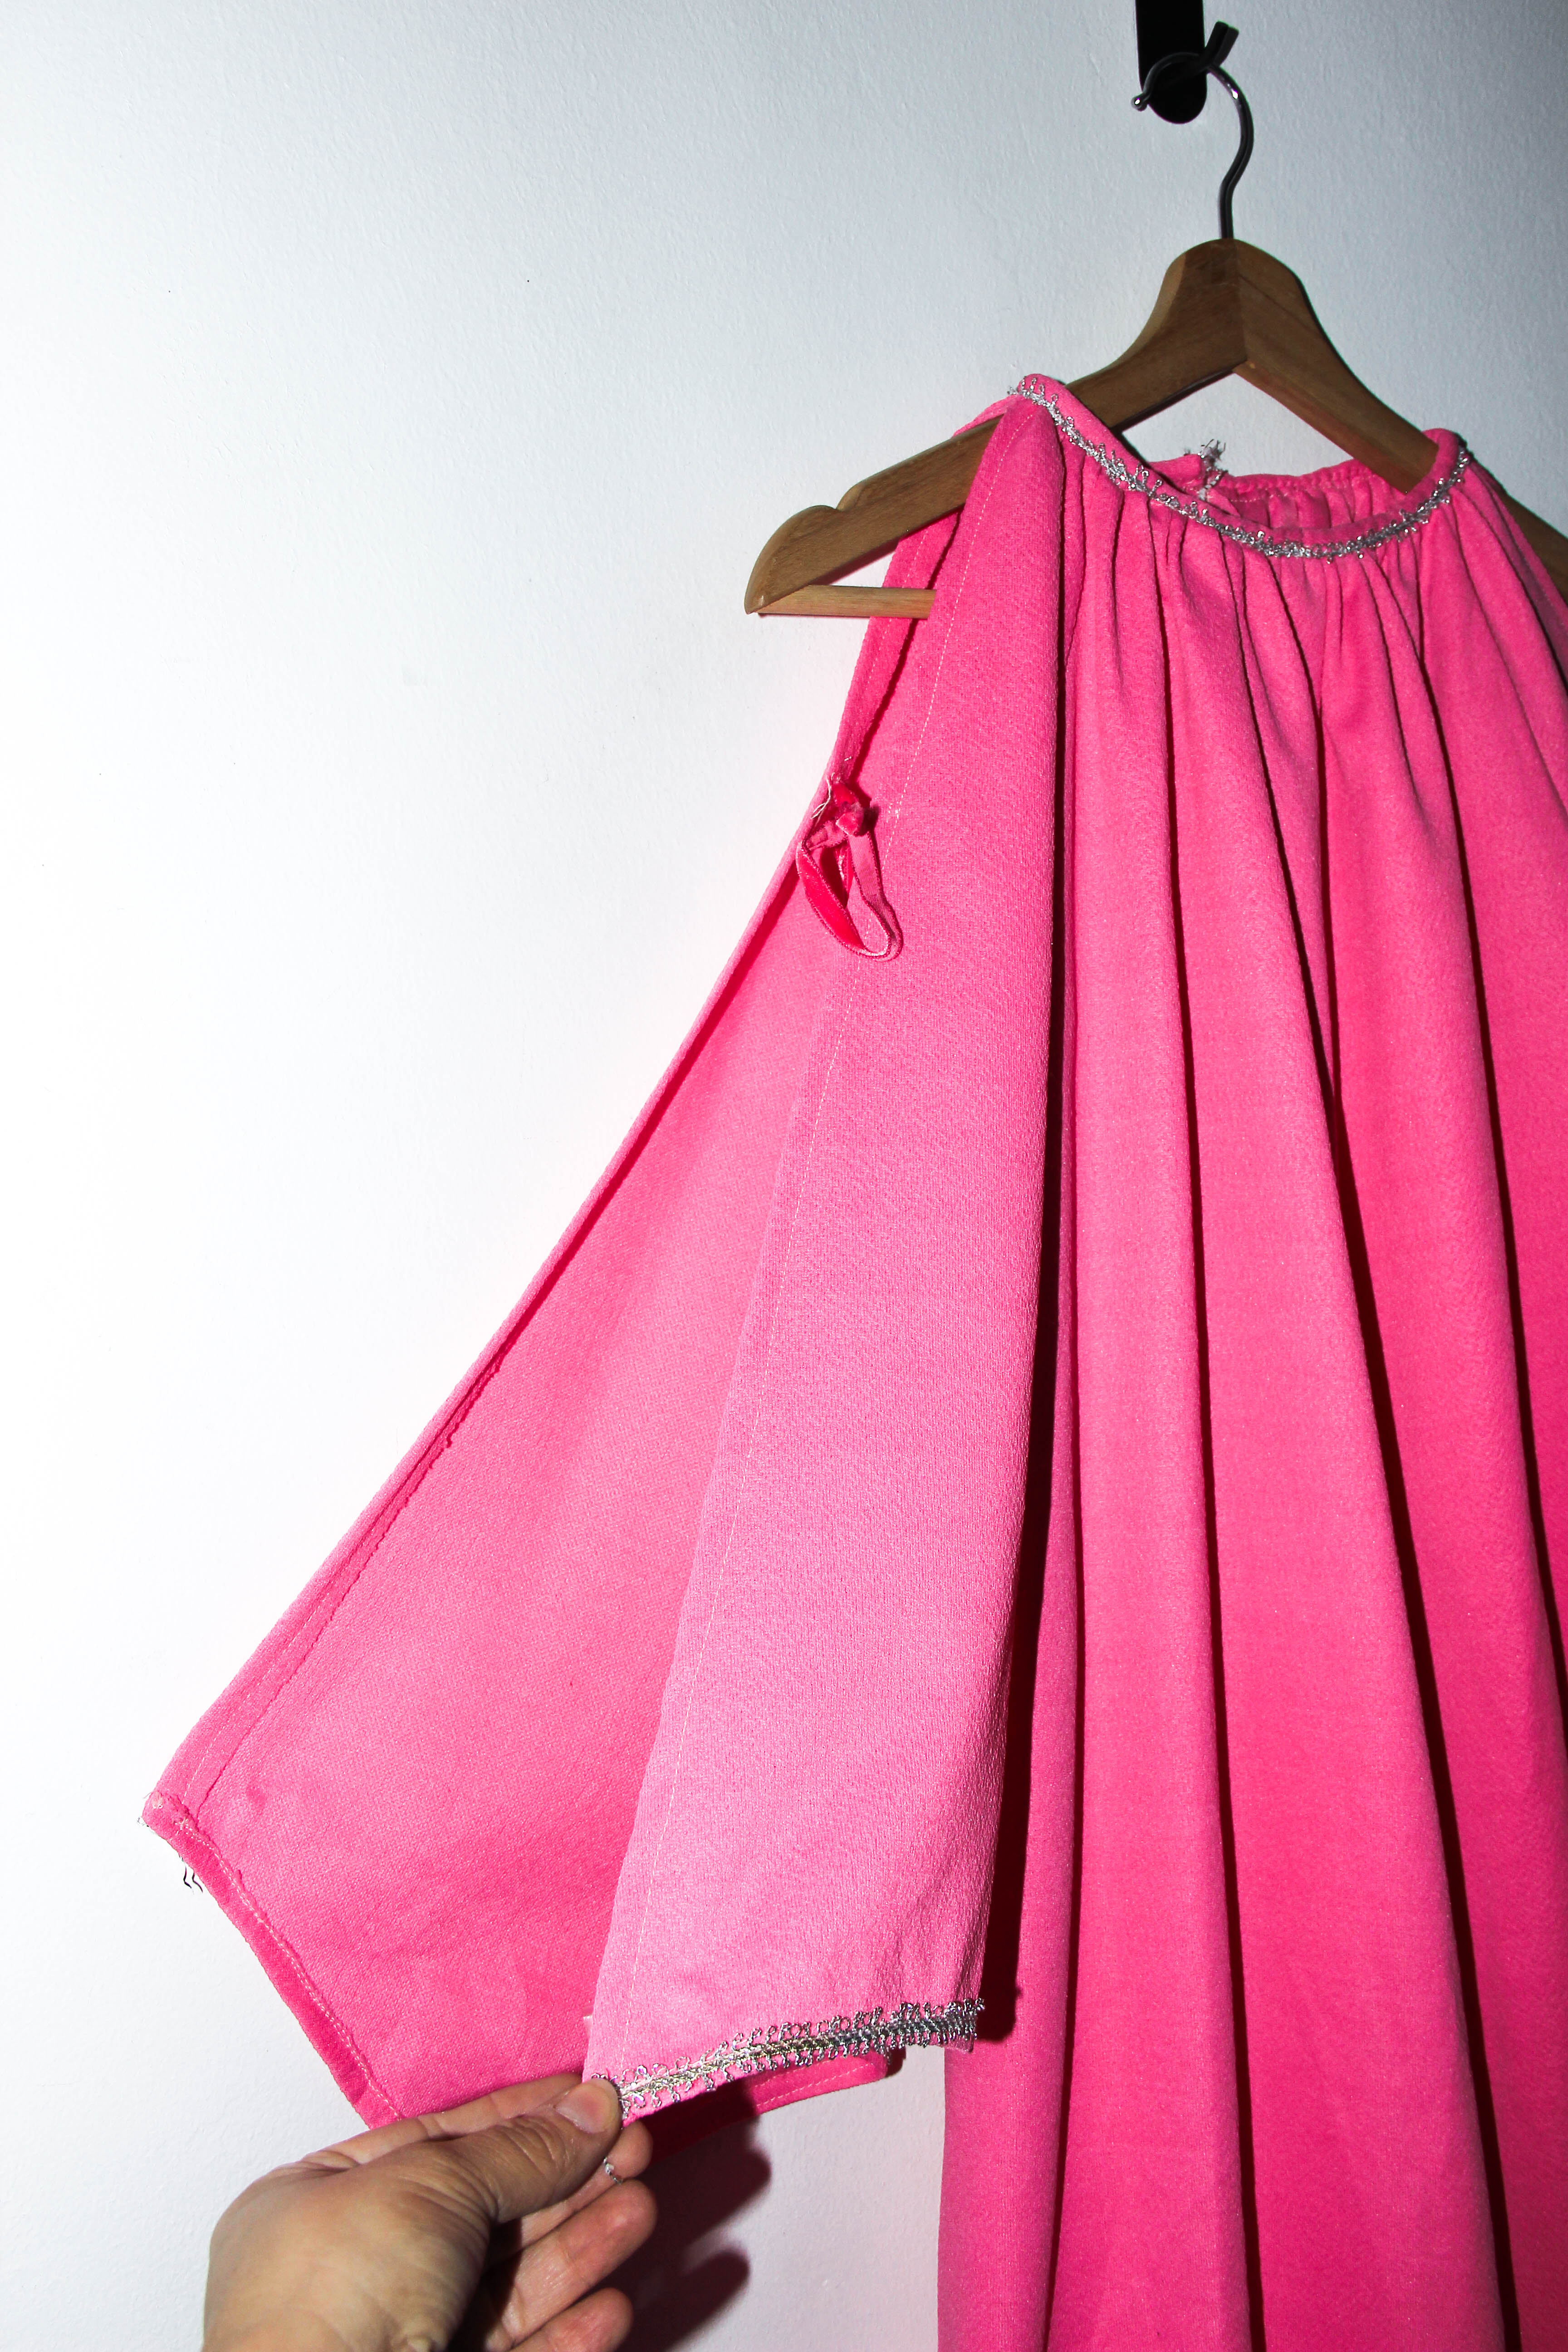 Vestido power pink 1960s